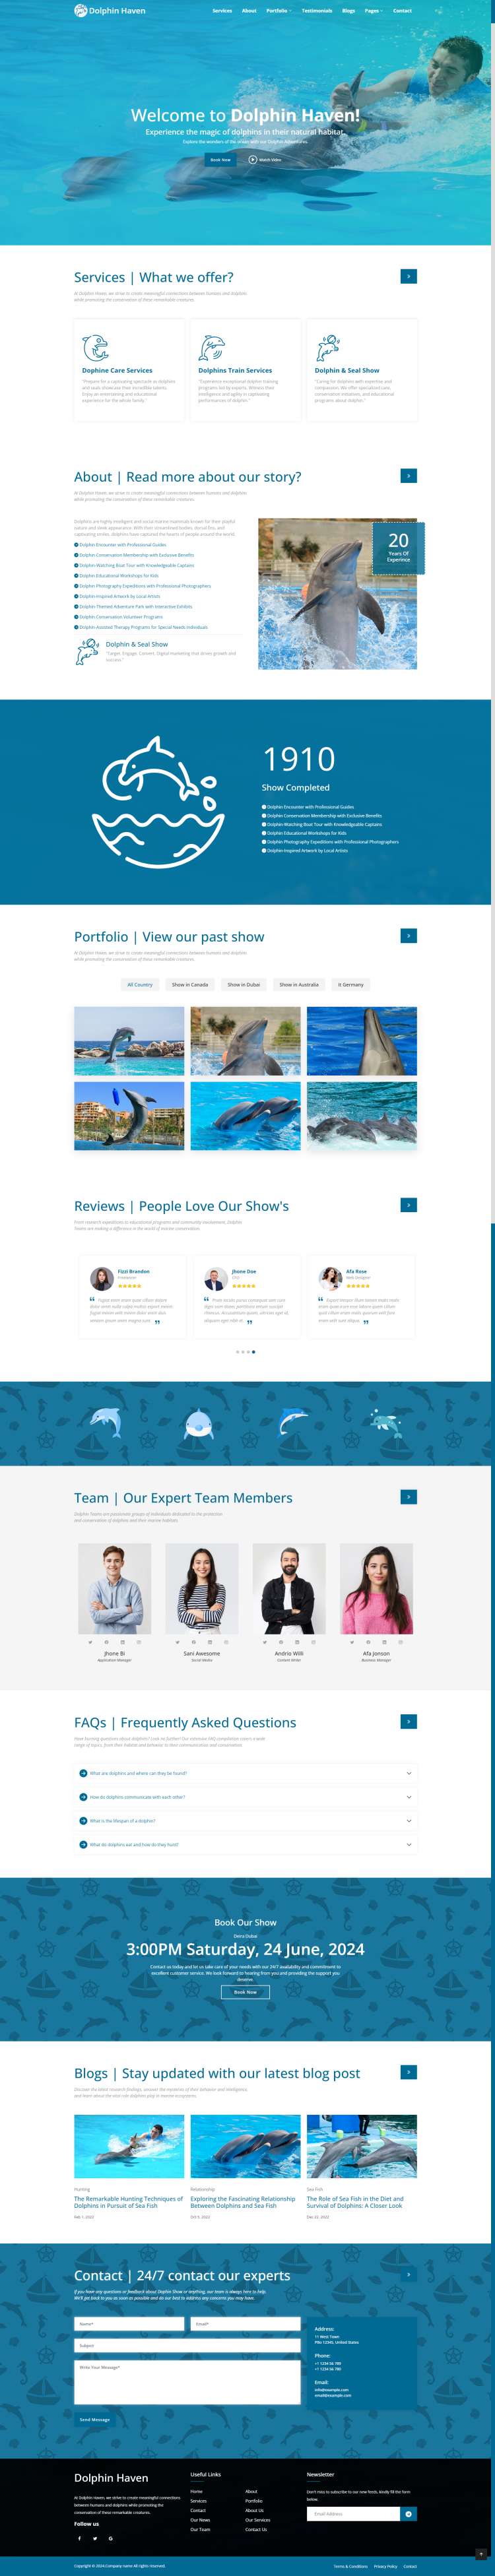 海豚宣传网页设计网站模板及源码下载